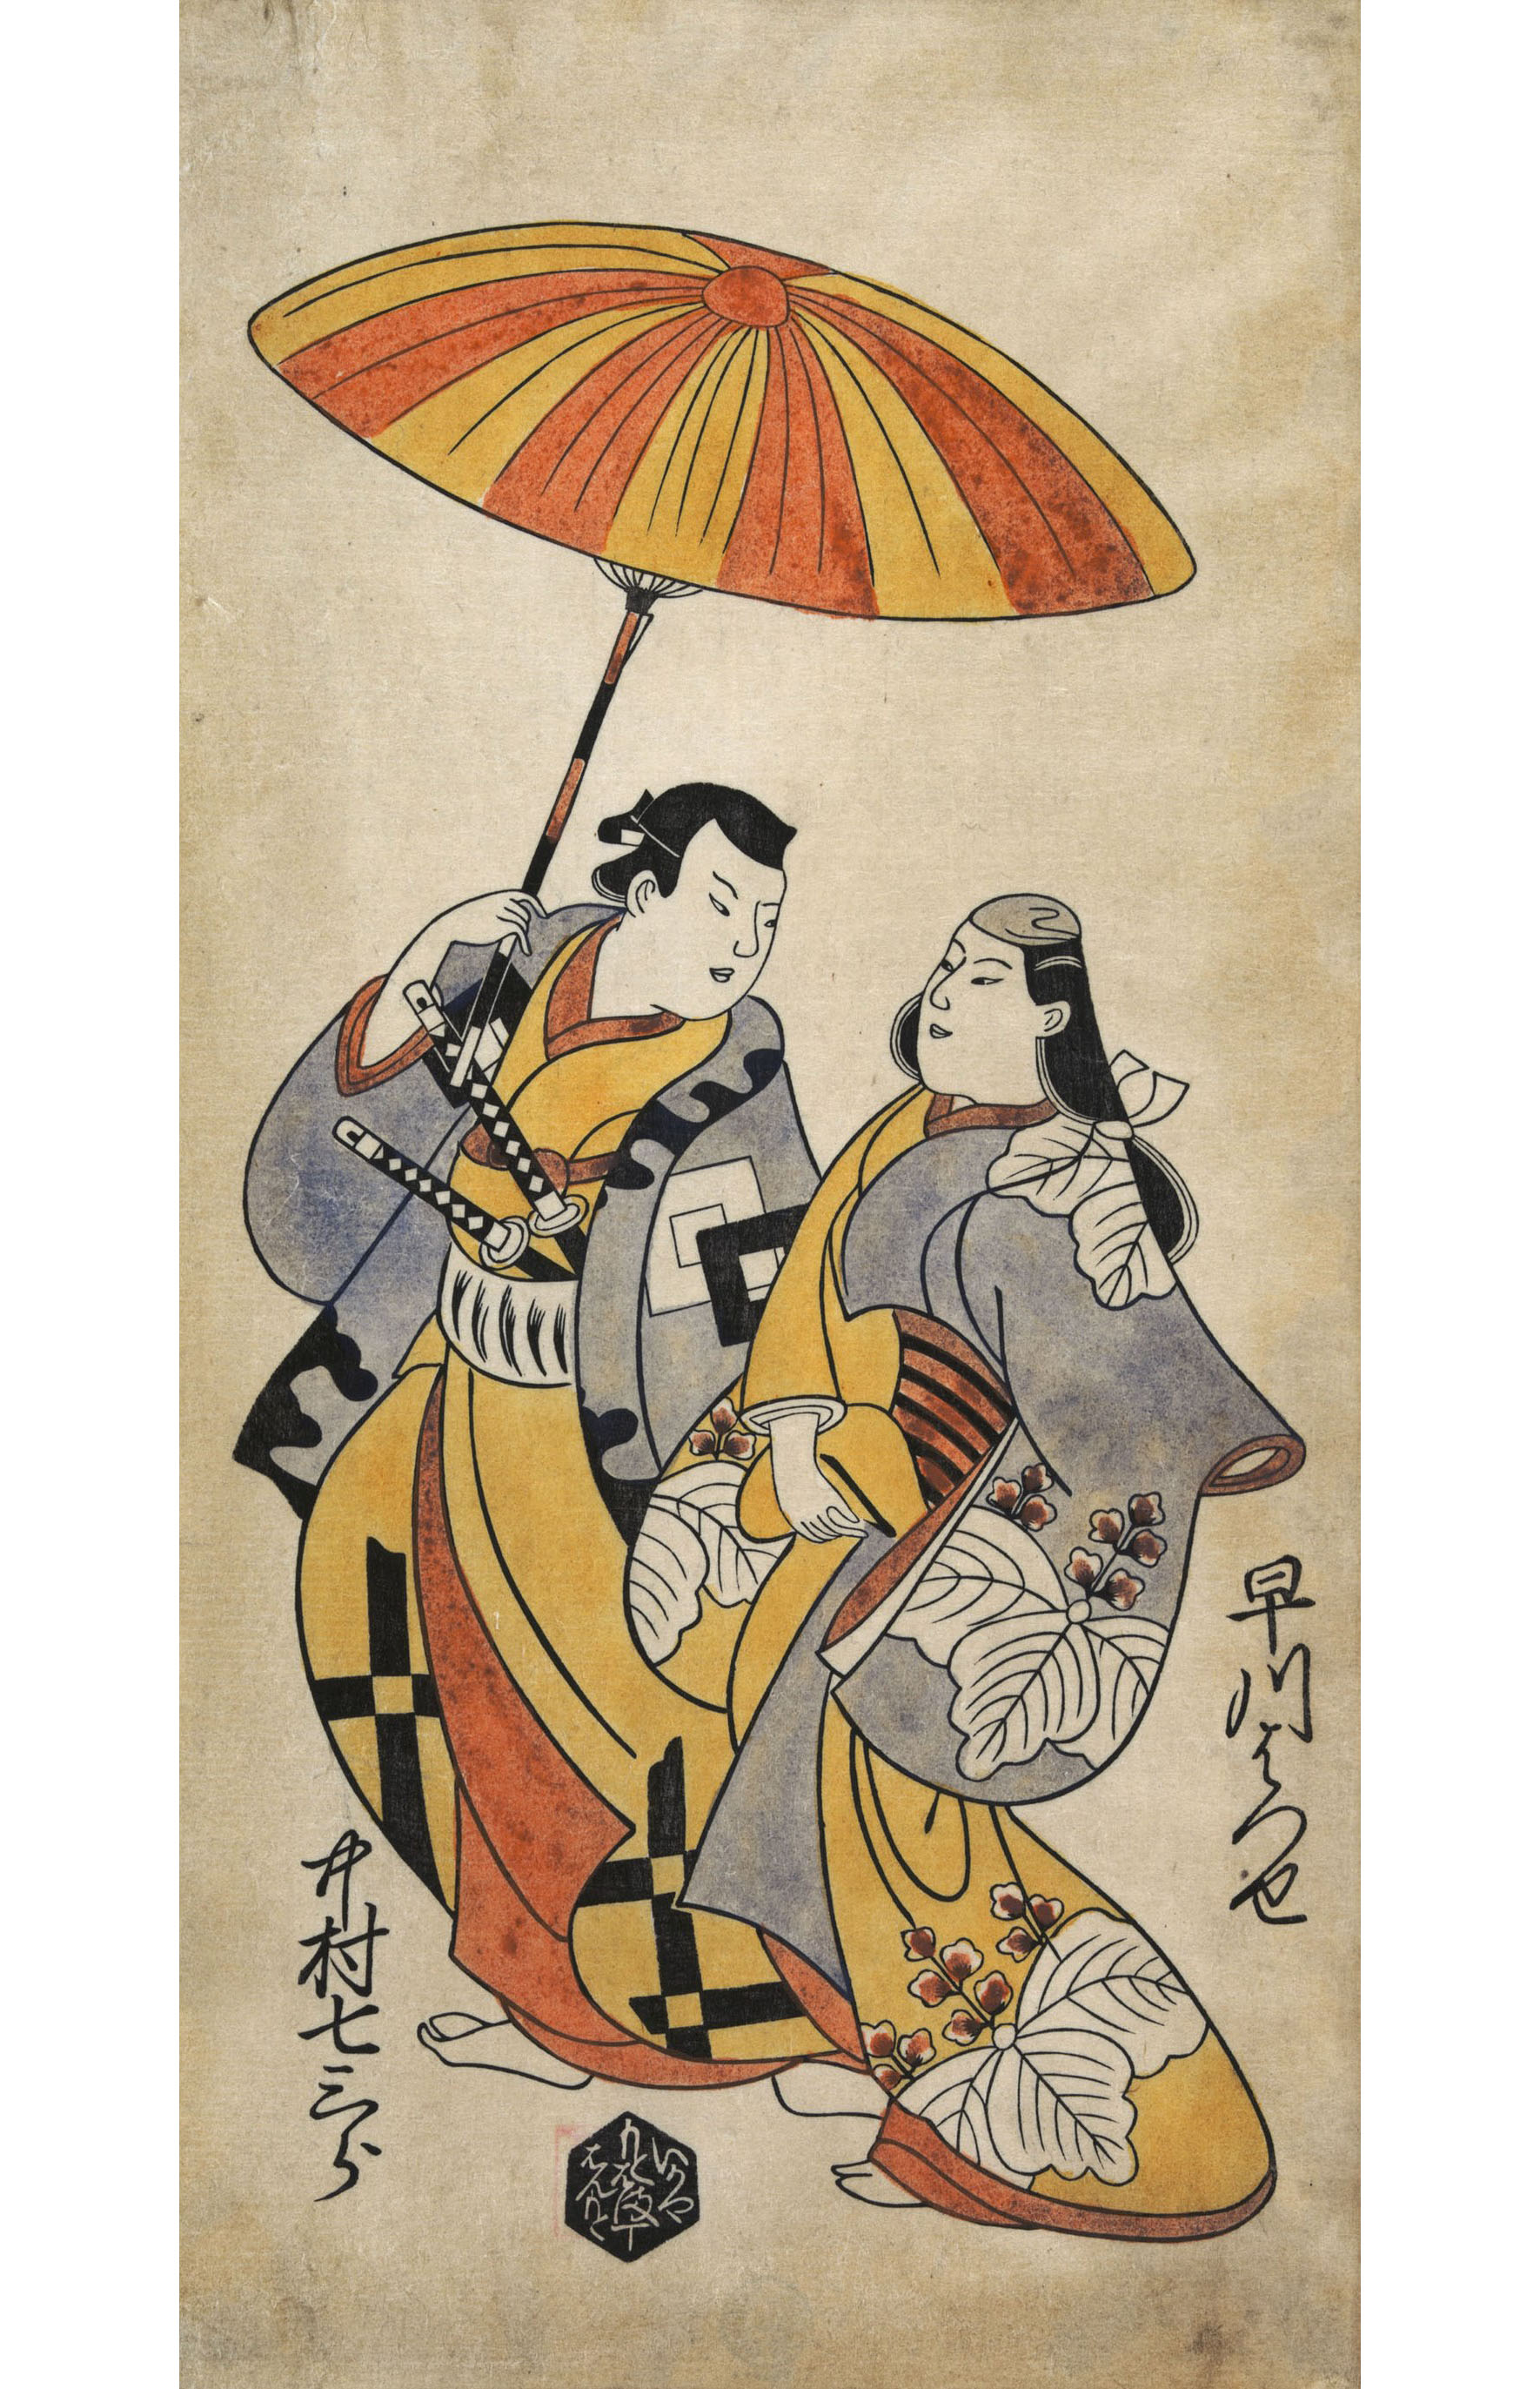 Тории Киёнобу. "Двое влюблённых под зонтиком. Актёры Хаякава Хасуцэ и Накамура Ситисабуро".